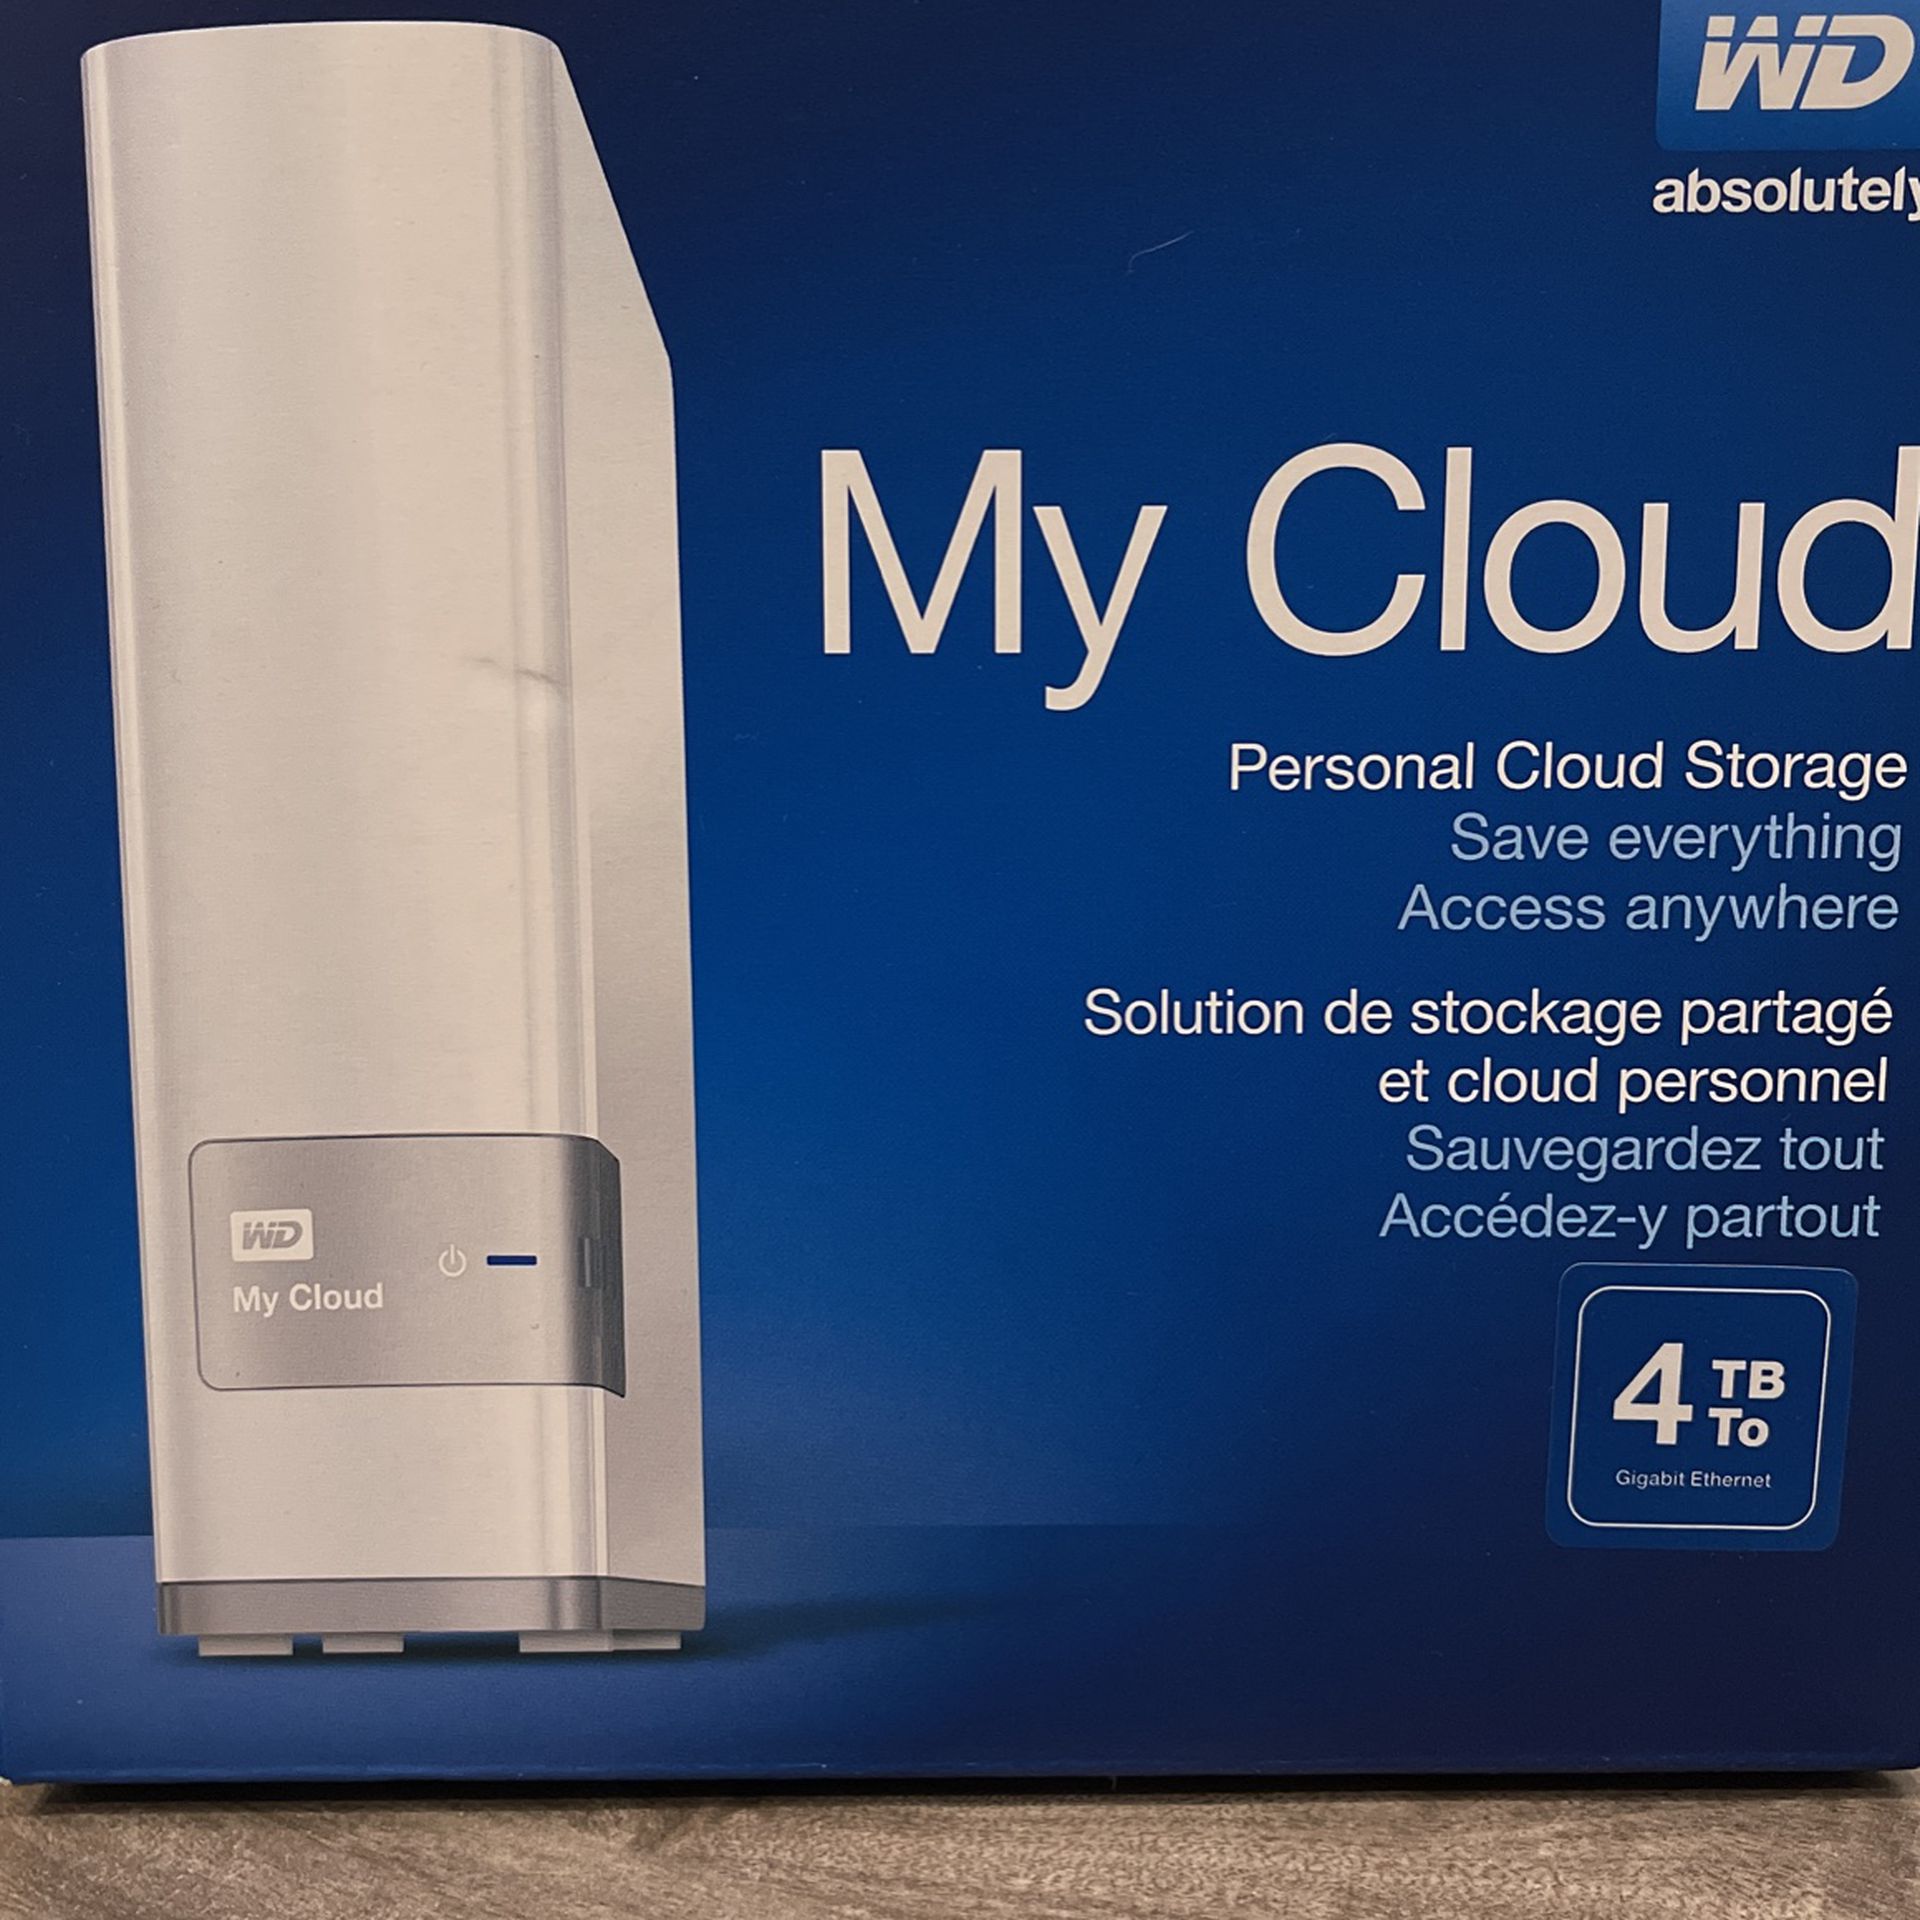 My Cloud Personal Cloud Storage